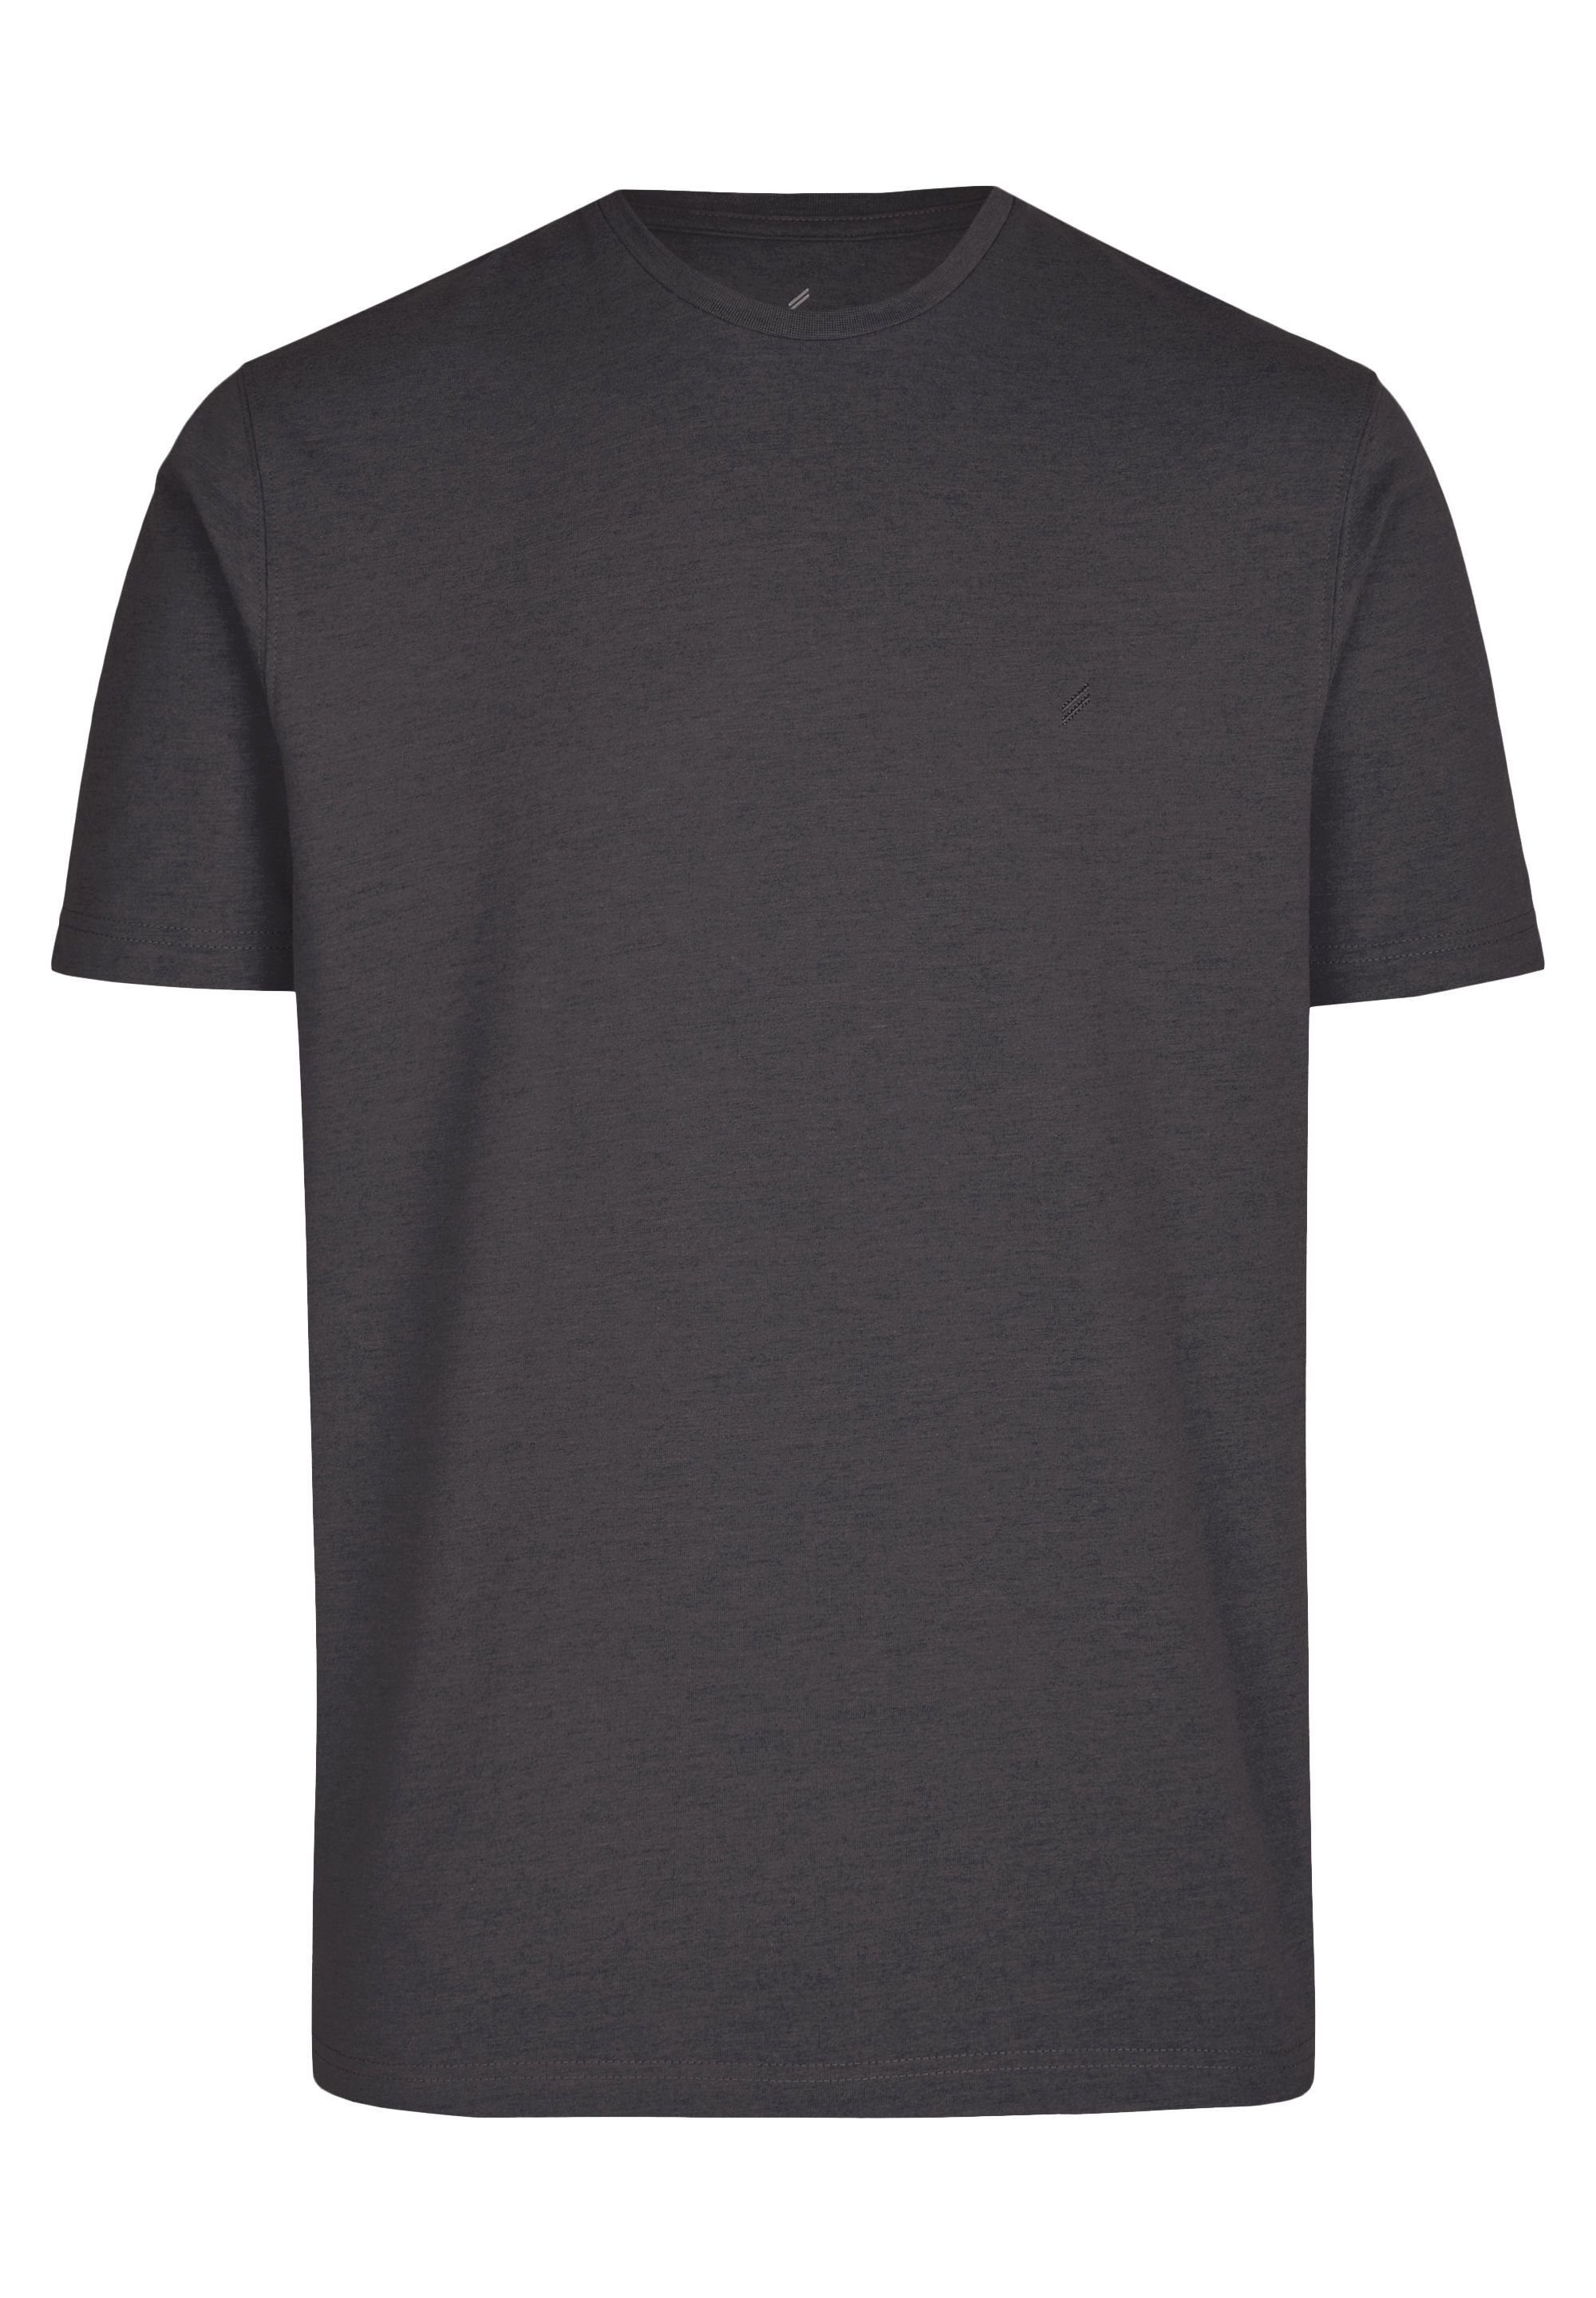 HECHTER PARIS T-Shirt im praktischen Doppelpack graphite